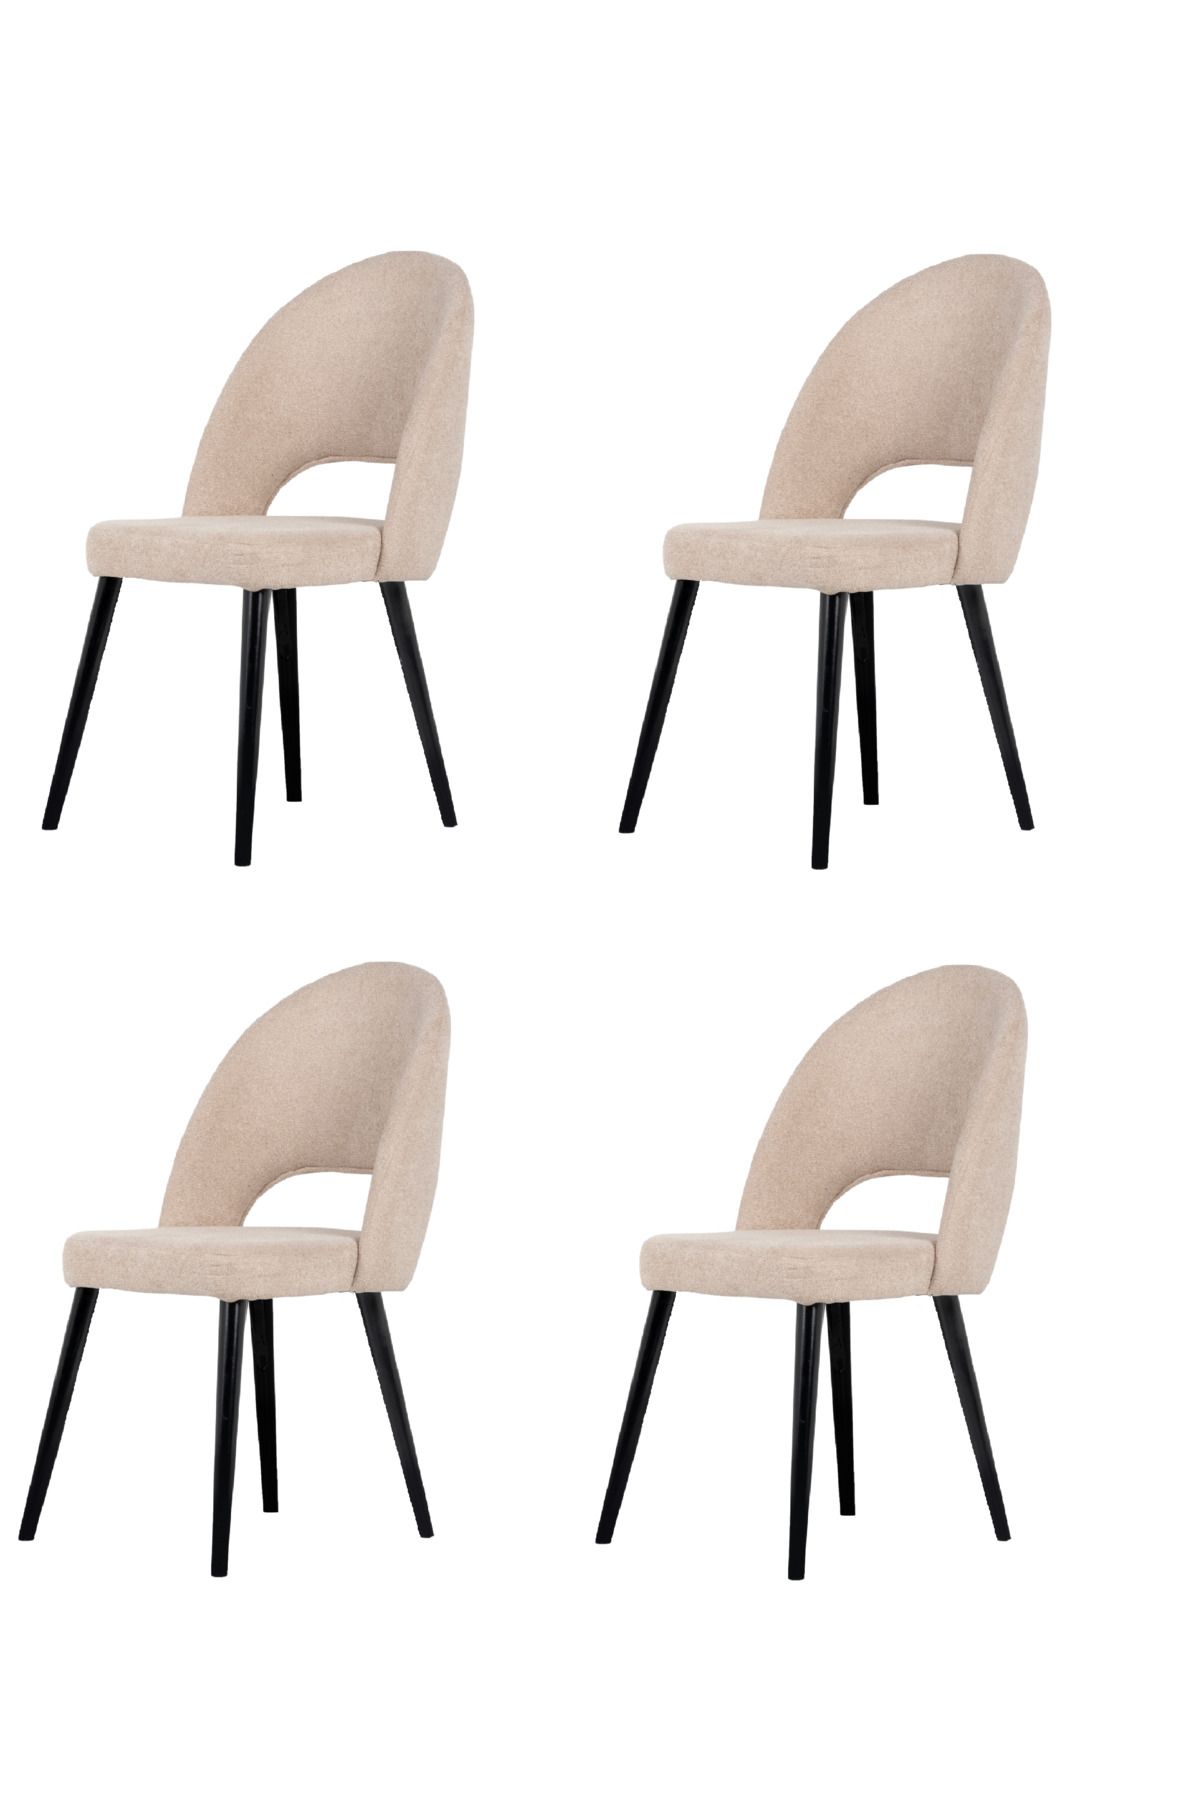 FLORADESİGN Loft 4' lü Sandalye Takımı / Mutfak Sandalyesi / Yemek Sandalyesi /Krem